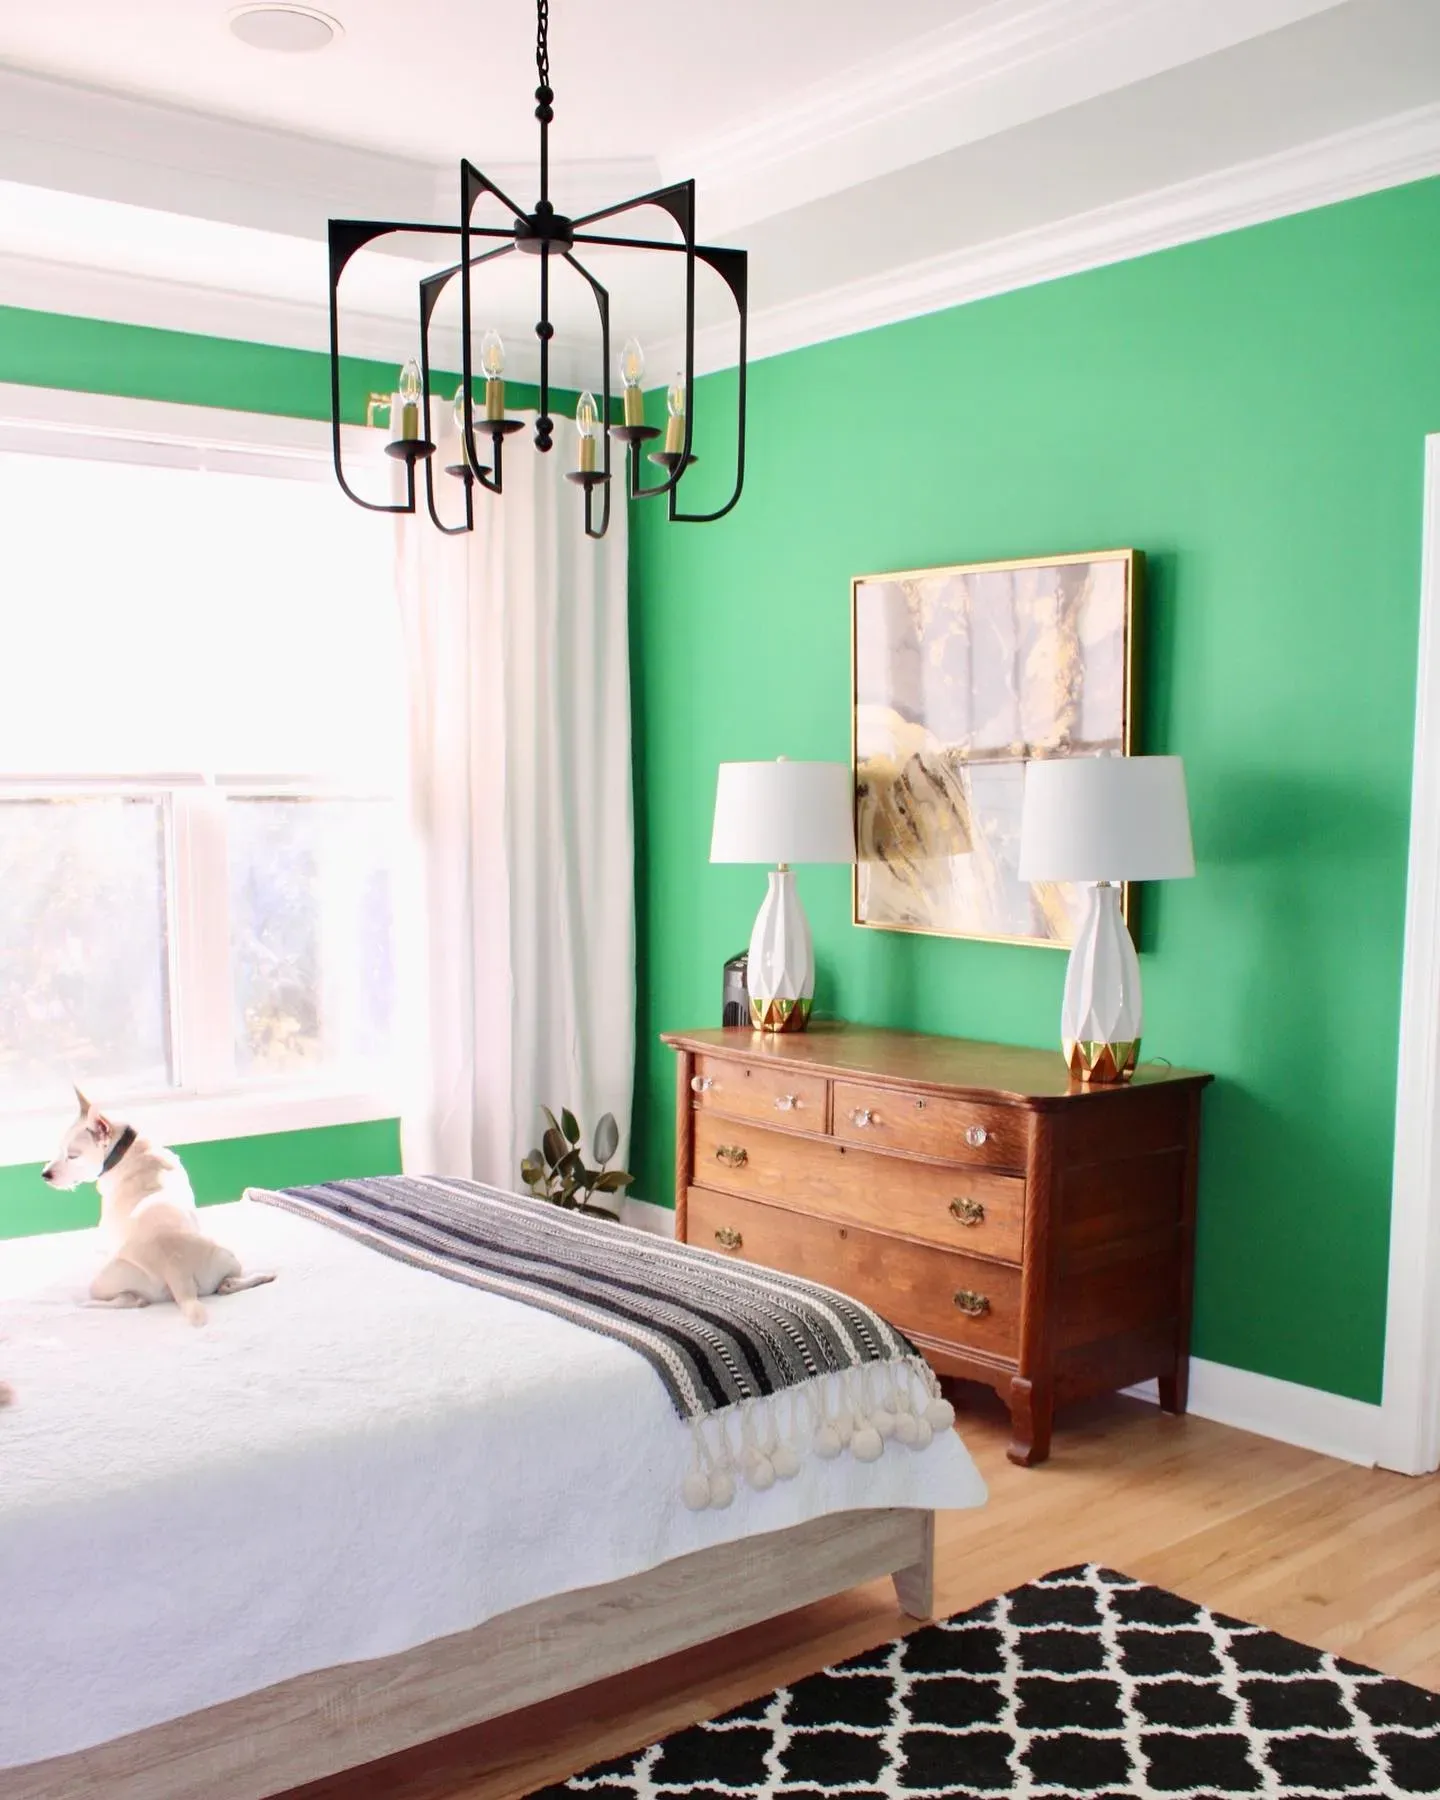 Sherwin Williams Kilkenny bedroom color